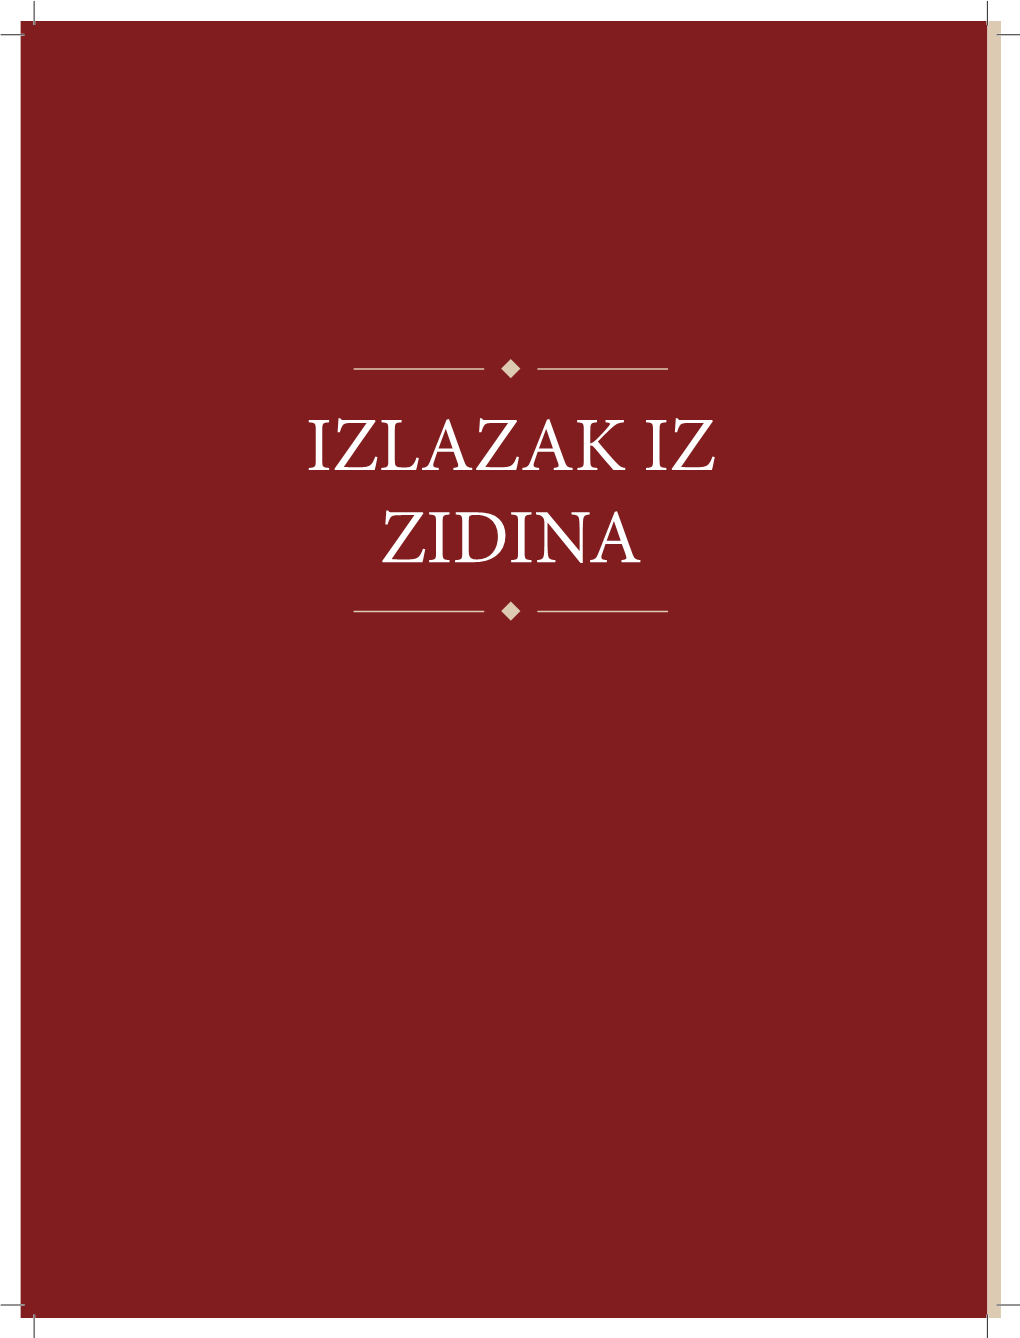 Povijest Grada Zagreba.Indb